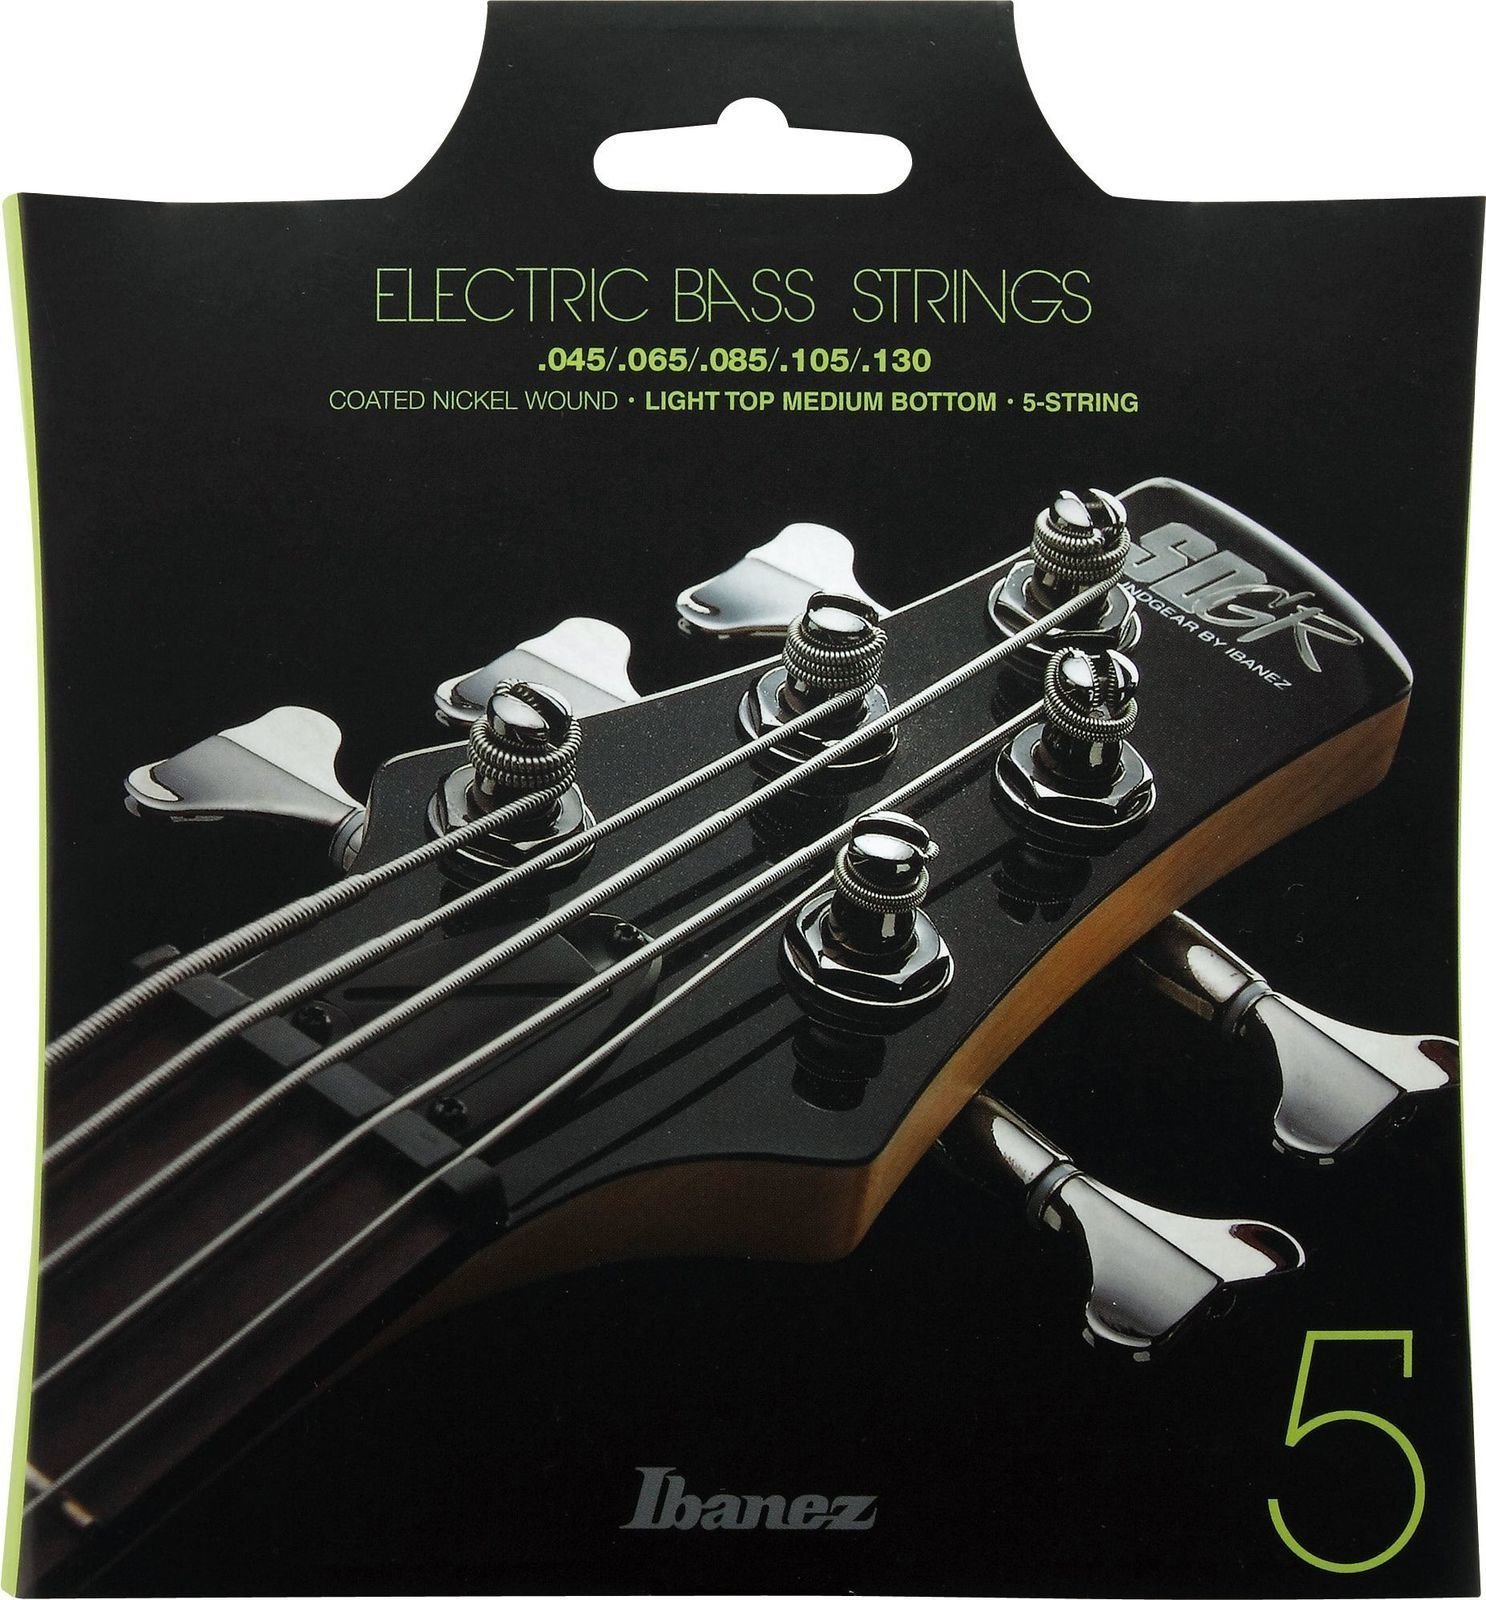 Bassguitar strings Ibanez IEBS5C